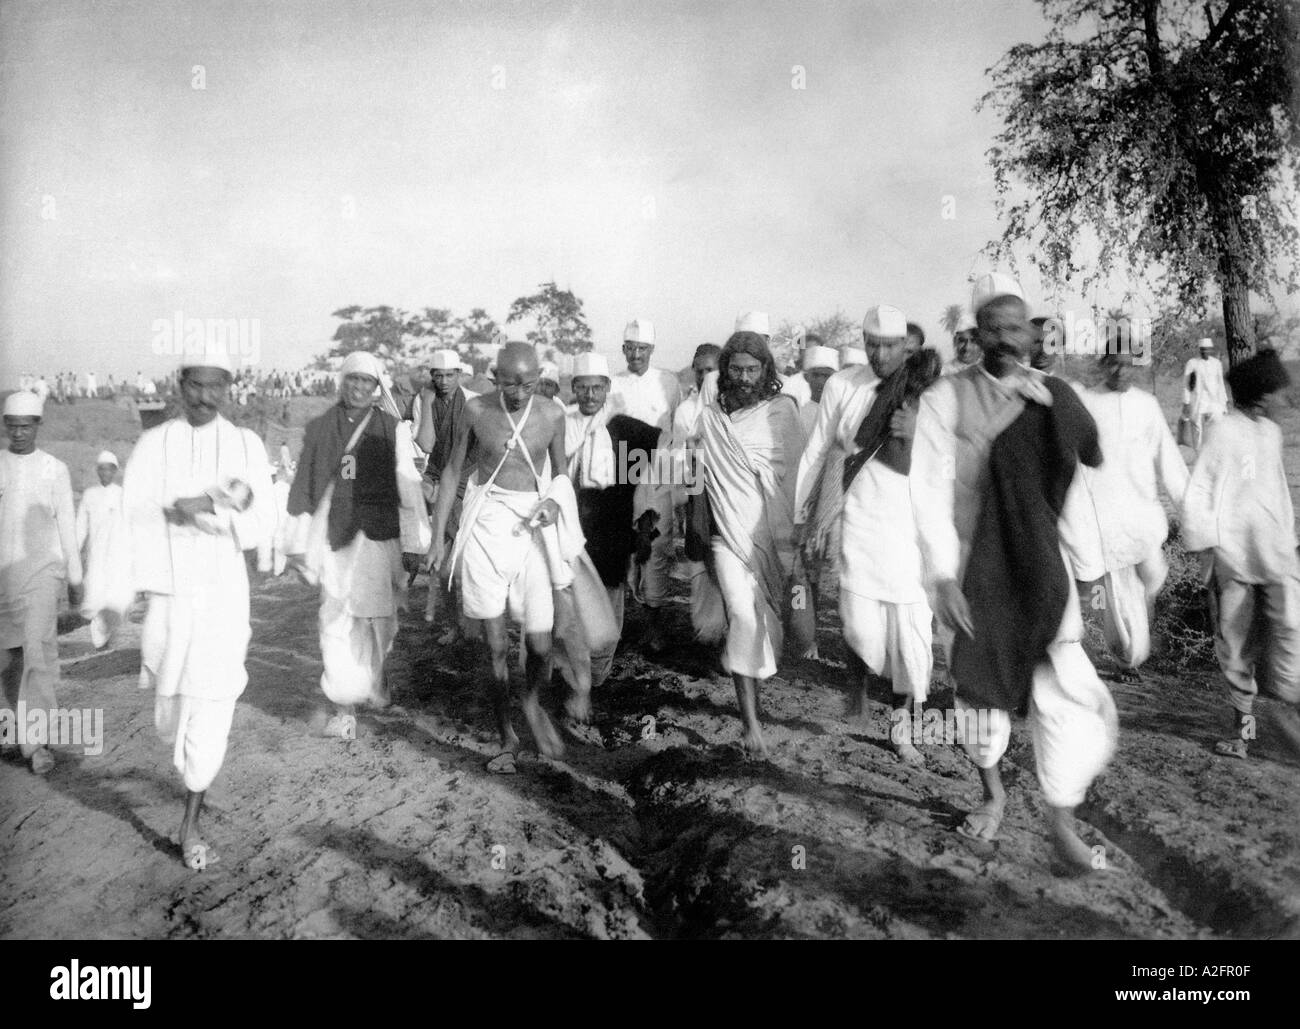 Mahatma Gandhi marchando caminando durante la agitación de la sal satyagrah Dandi march Walk protesta India Asia marzo 1930 vieja foto vintage 1900s Foto de stock